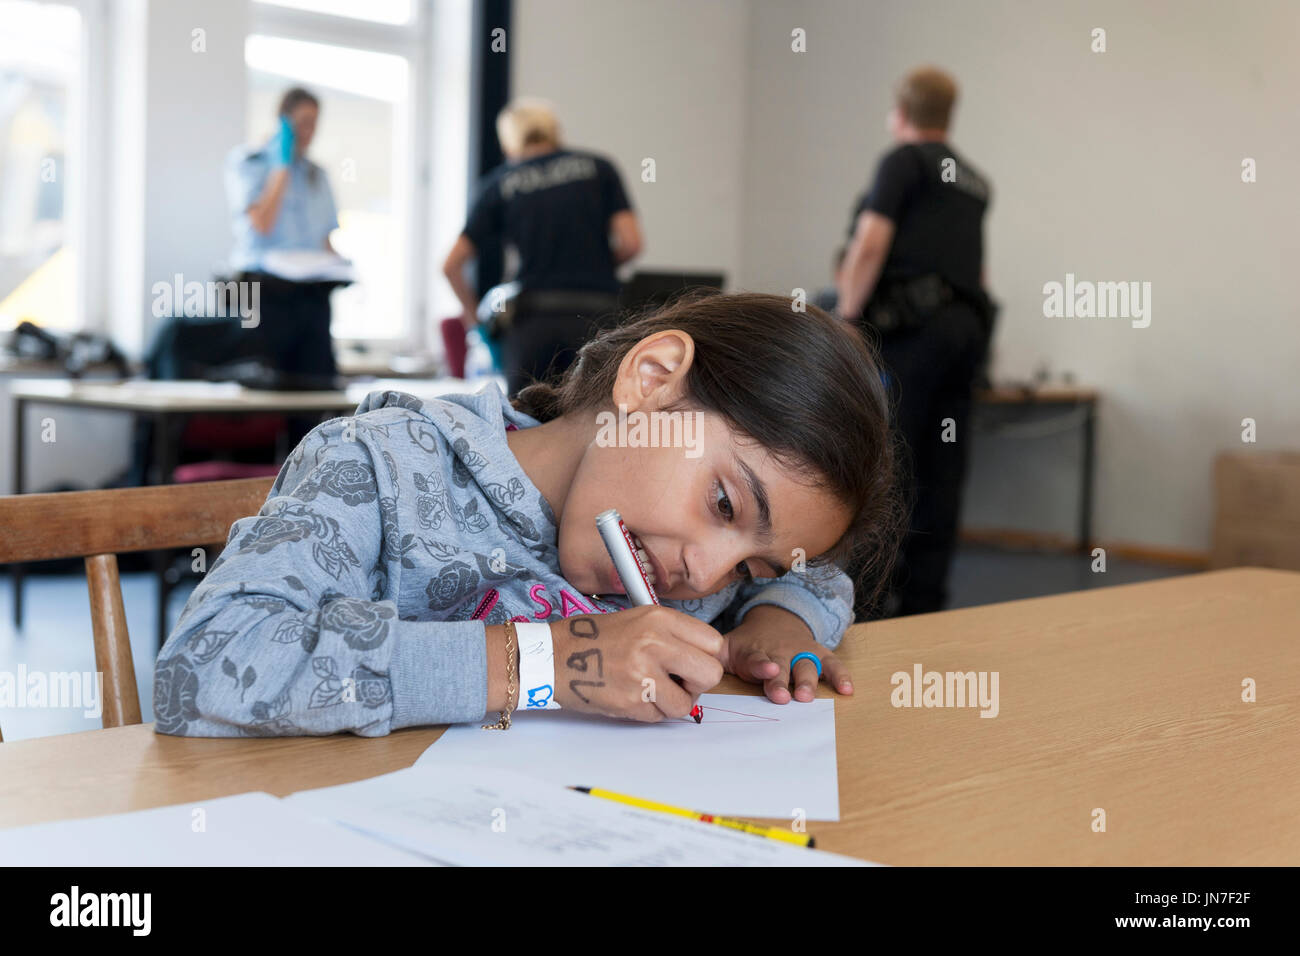 Passau, Alemania - Agosto 2, 2015 : una joven refugiada desde Siria en la zona de inscripción en Passau, Baviera. Ella está escribiendo una carta. Foto de stock